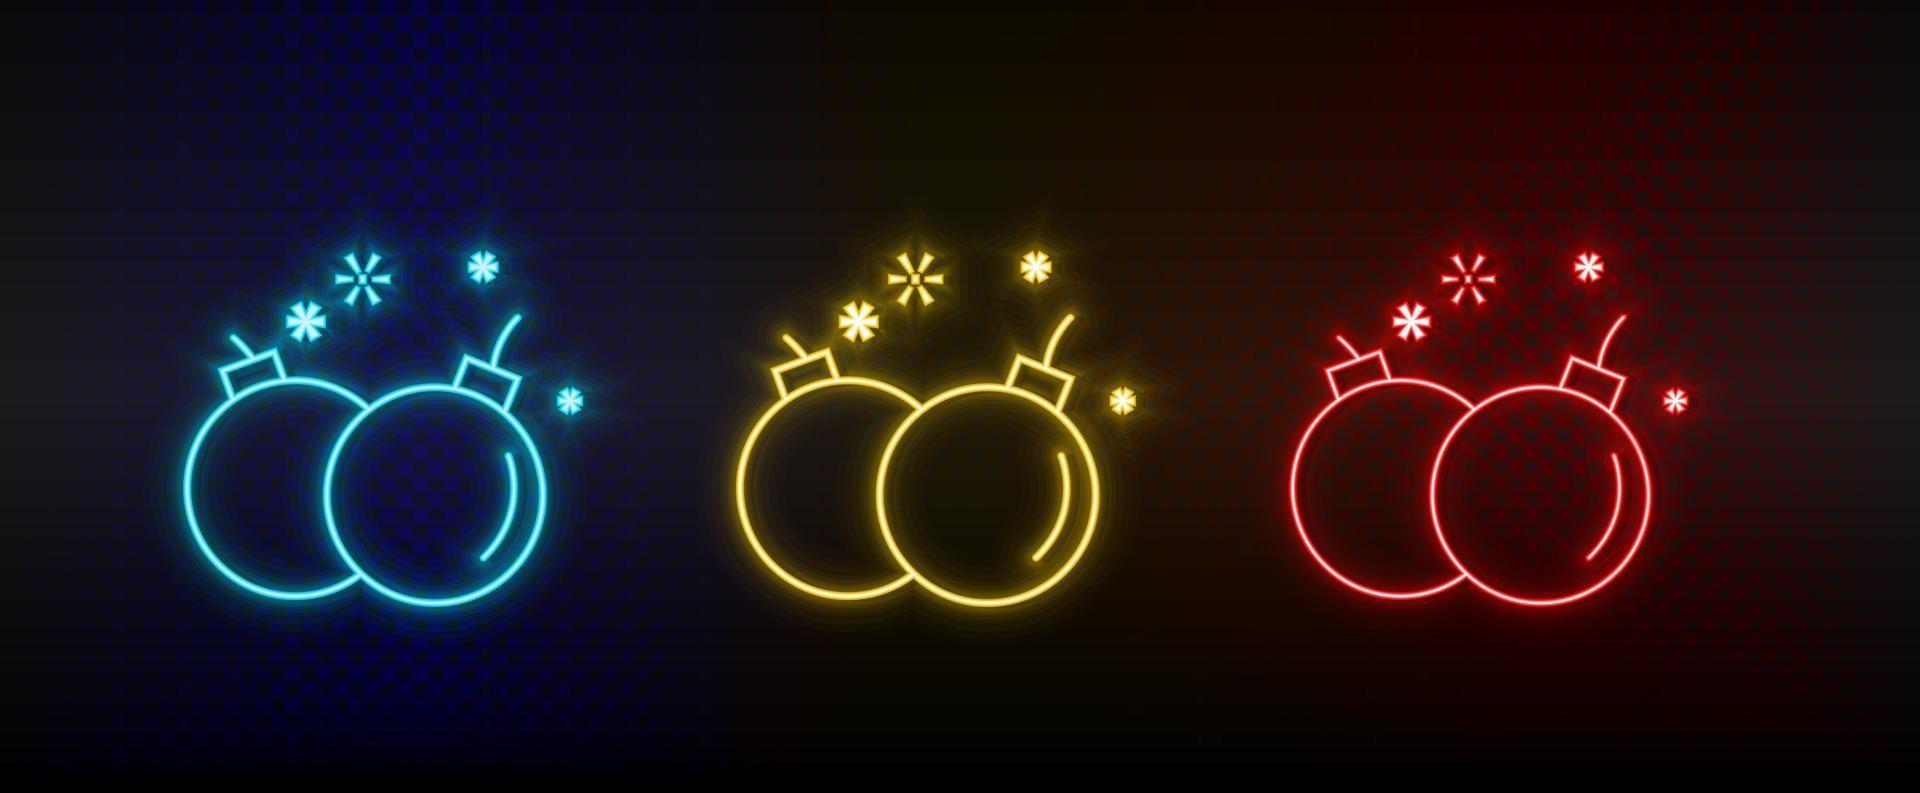 ícones de néon. bomba armas detonação retro arcade. conjunto de ícone de vetor de néon vermelho, azul e amarelo em fundo escuro